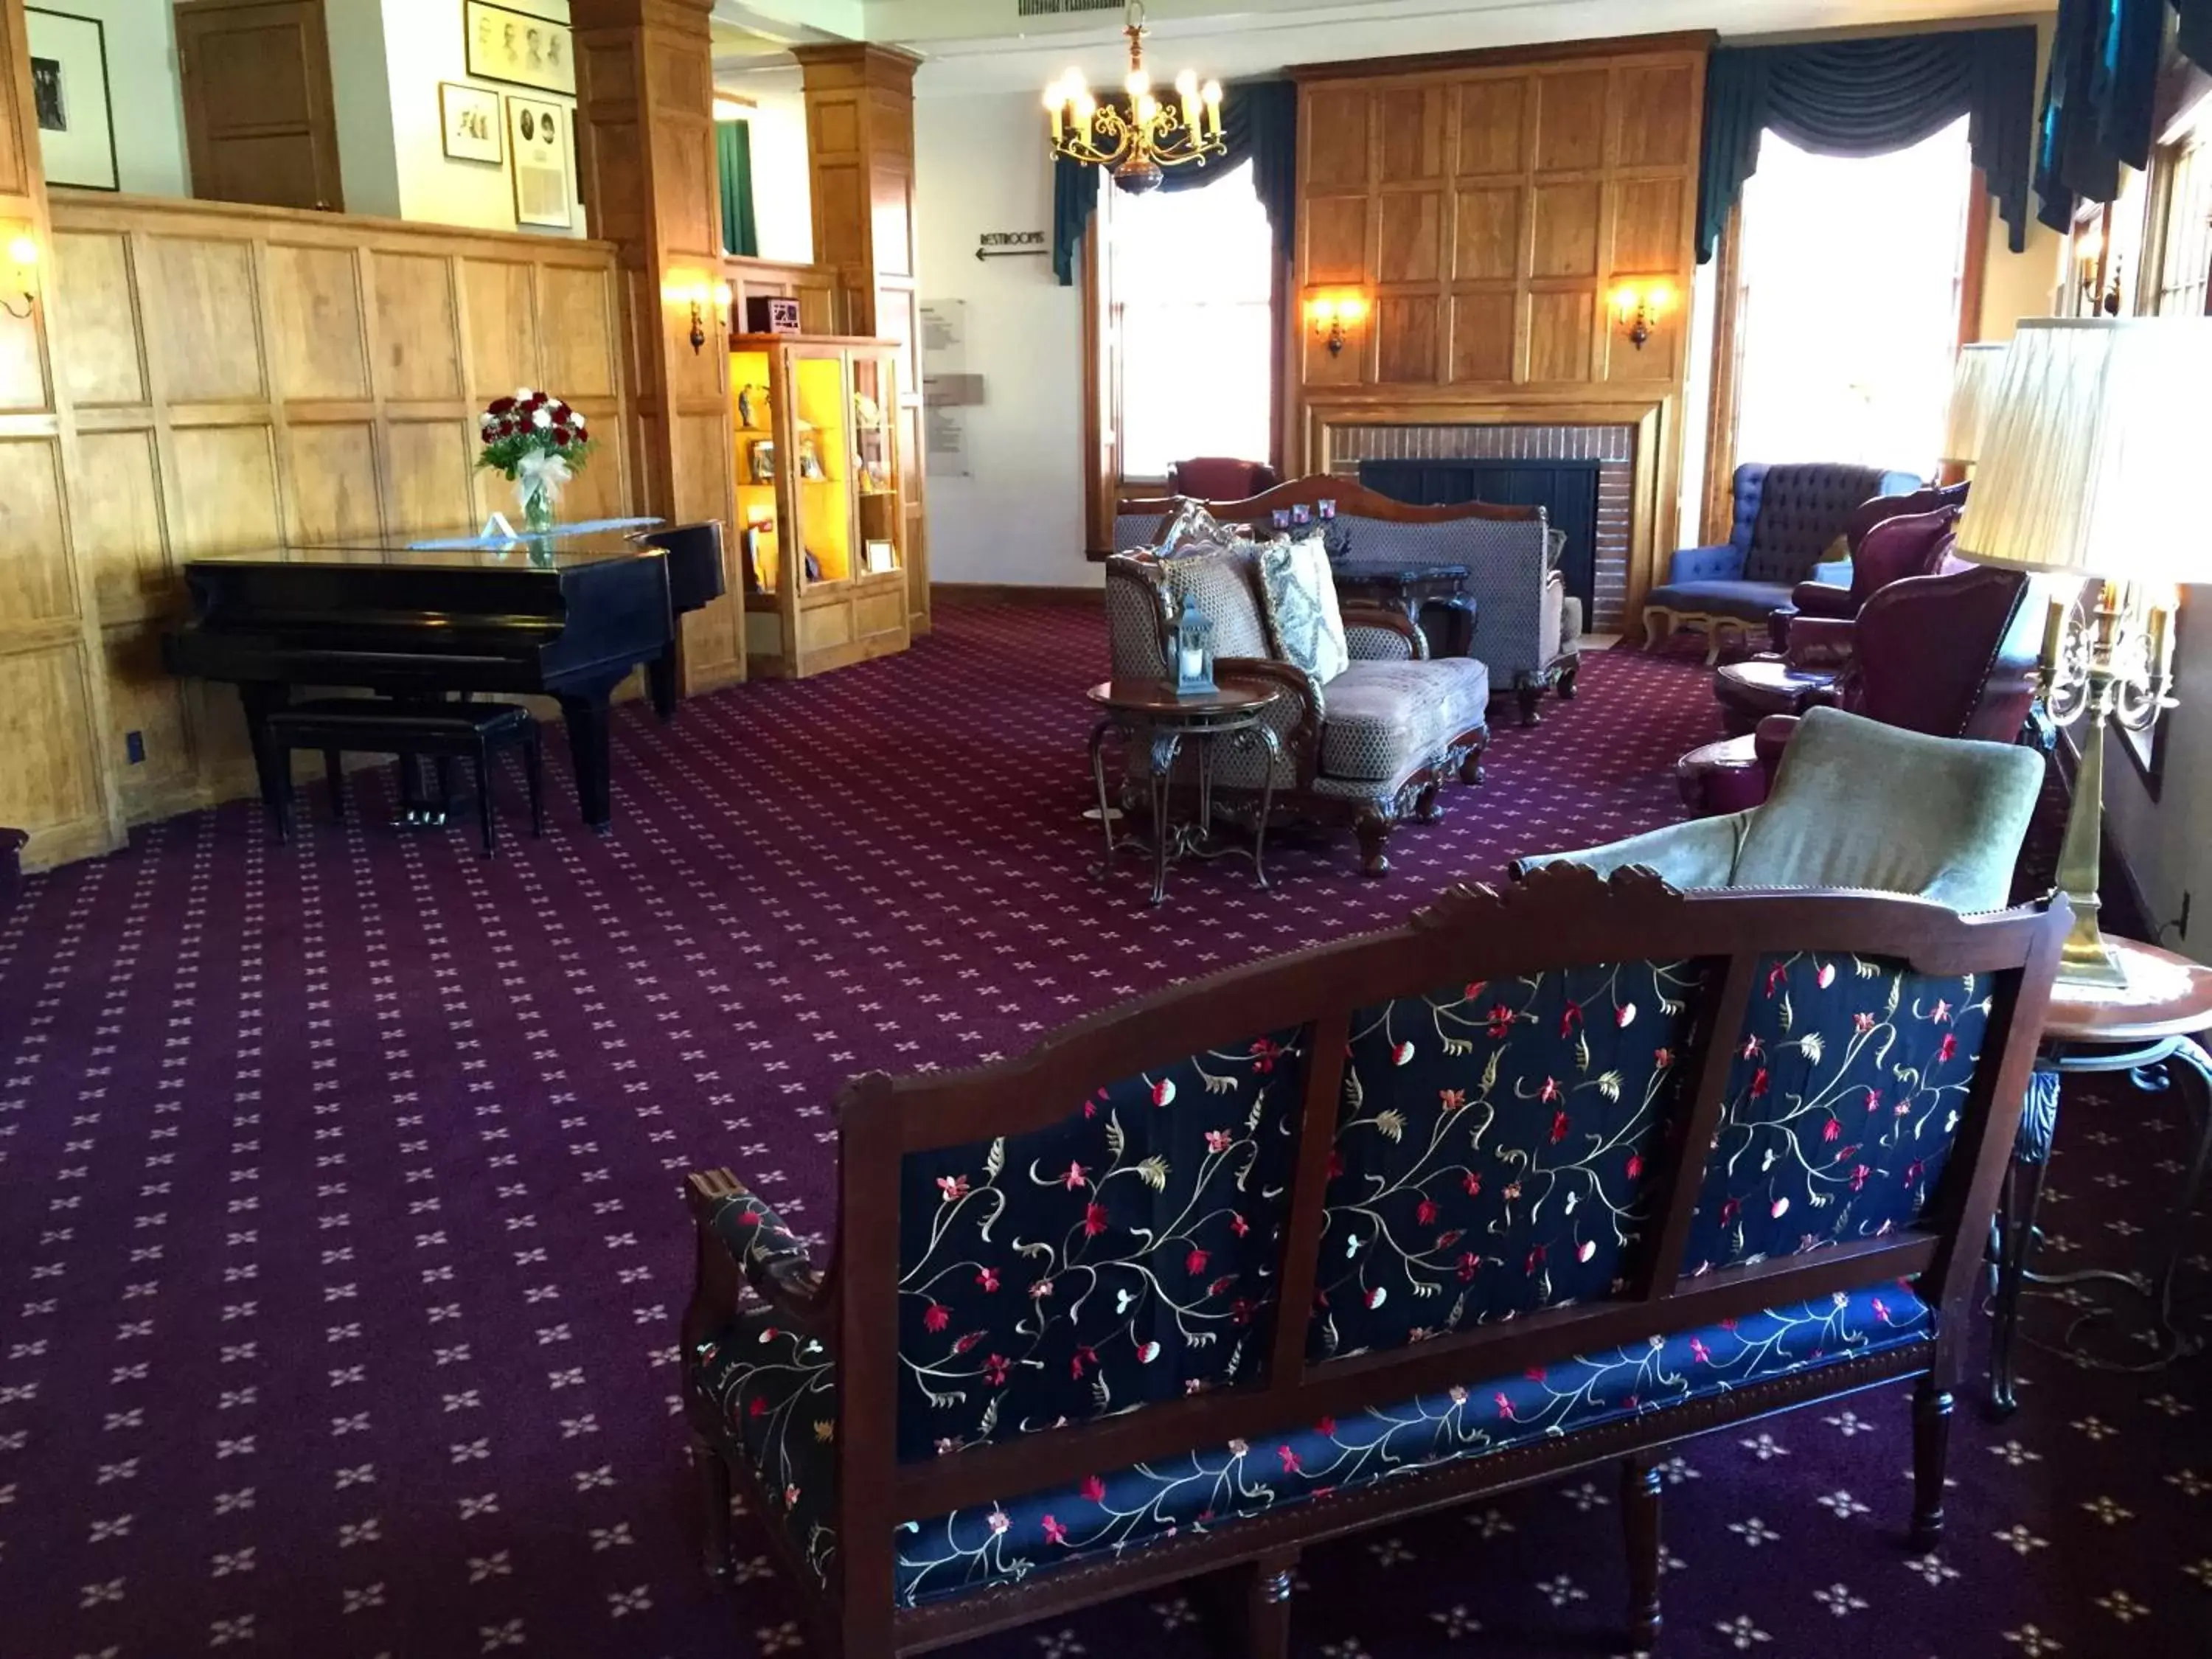 Lobby or reception in Boulder Dam Hotel